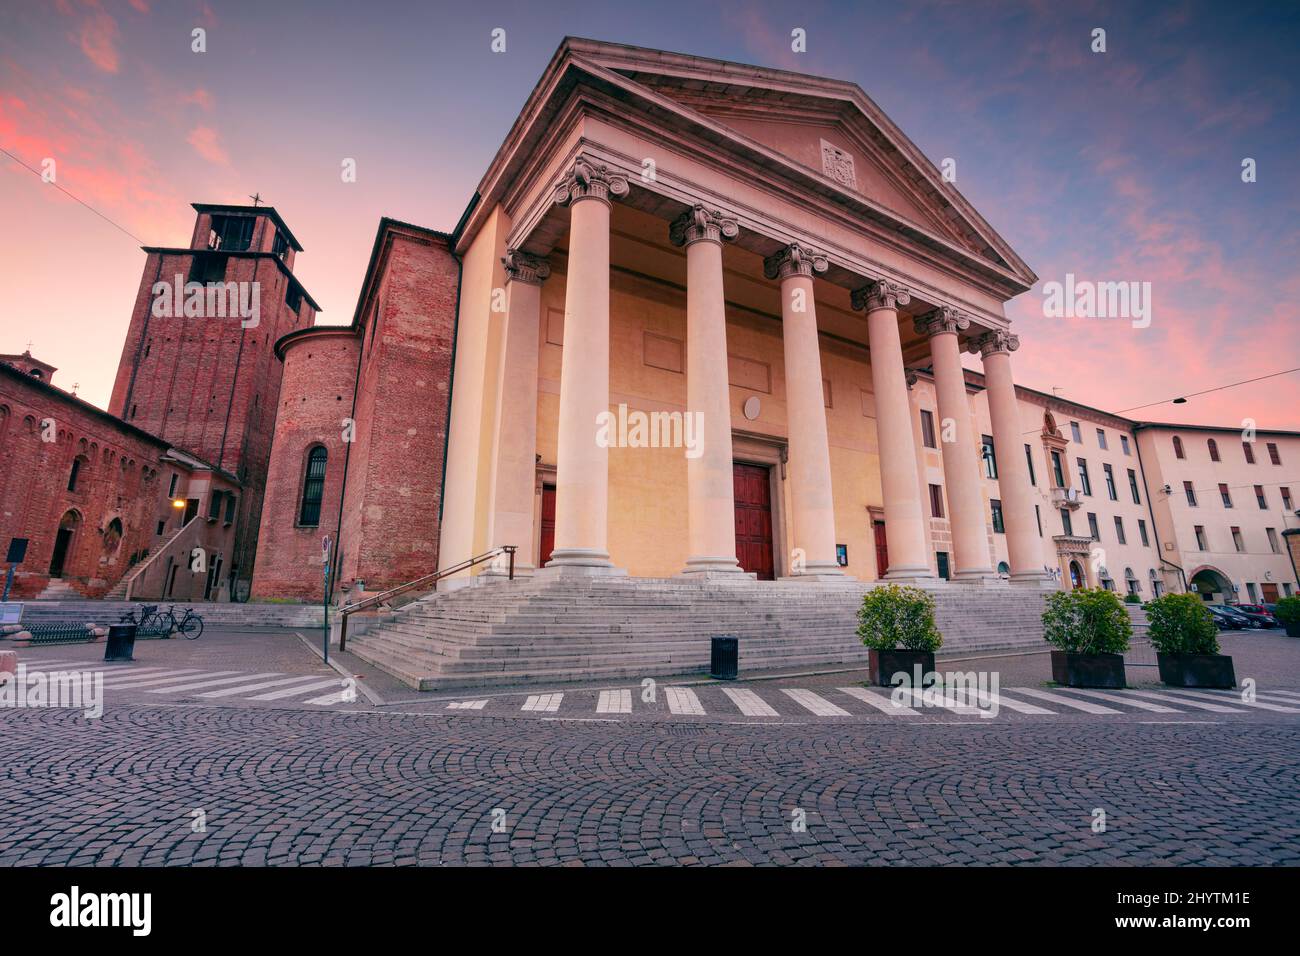 Treviso, Italia. Imagen del paisaje urbano del centro histórico de Treviso, Italia, con la catedral de Treviso al amanecer. Foto de stock